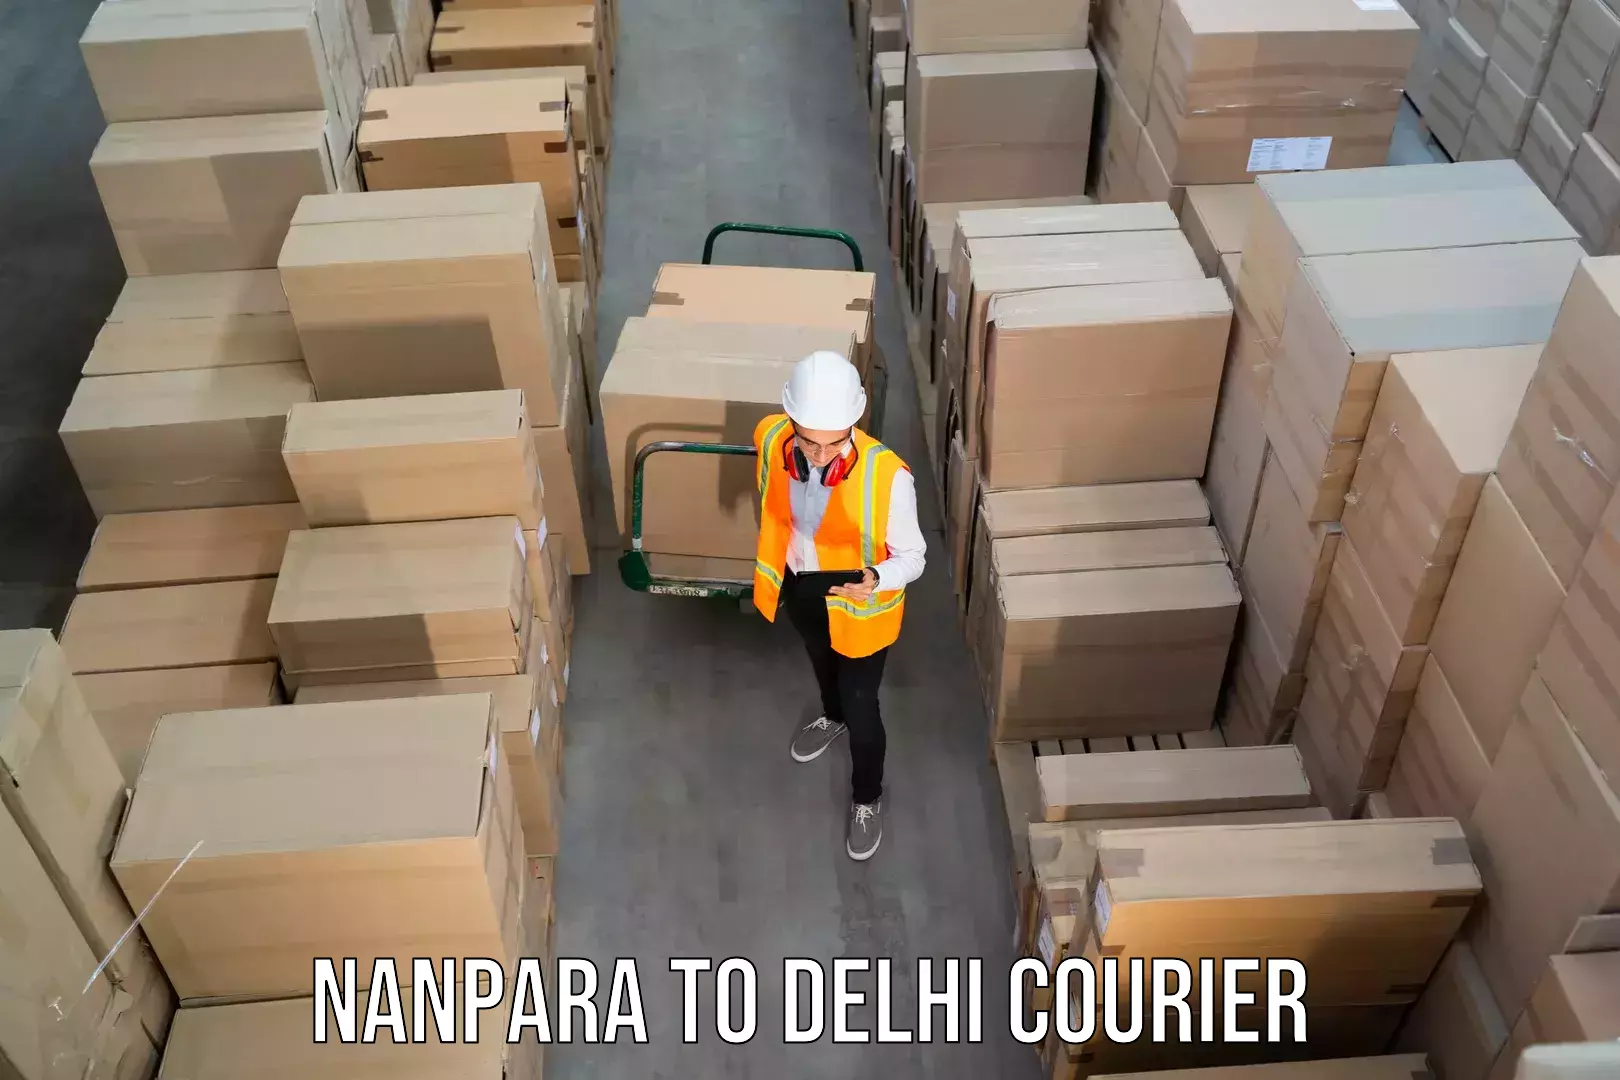 24/7 courier service Nanpara to Delhi